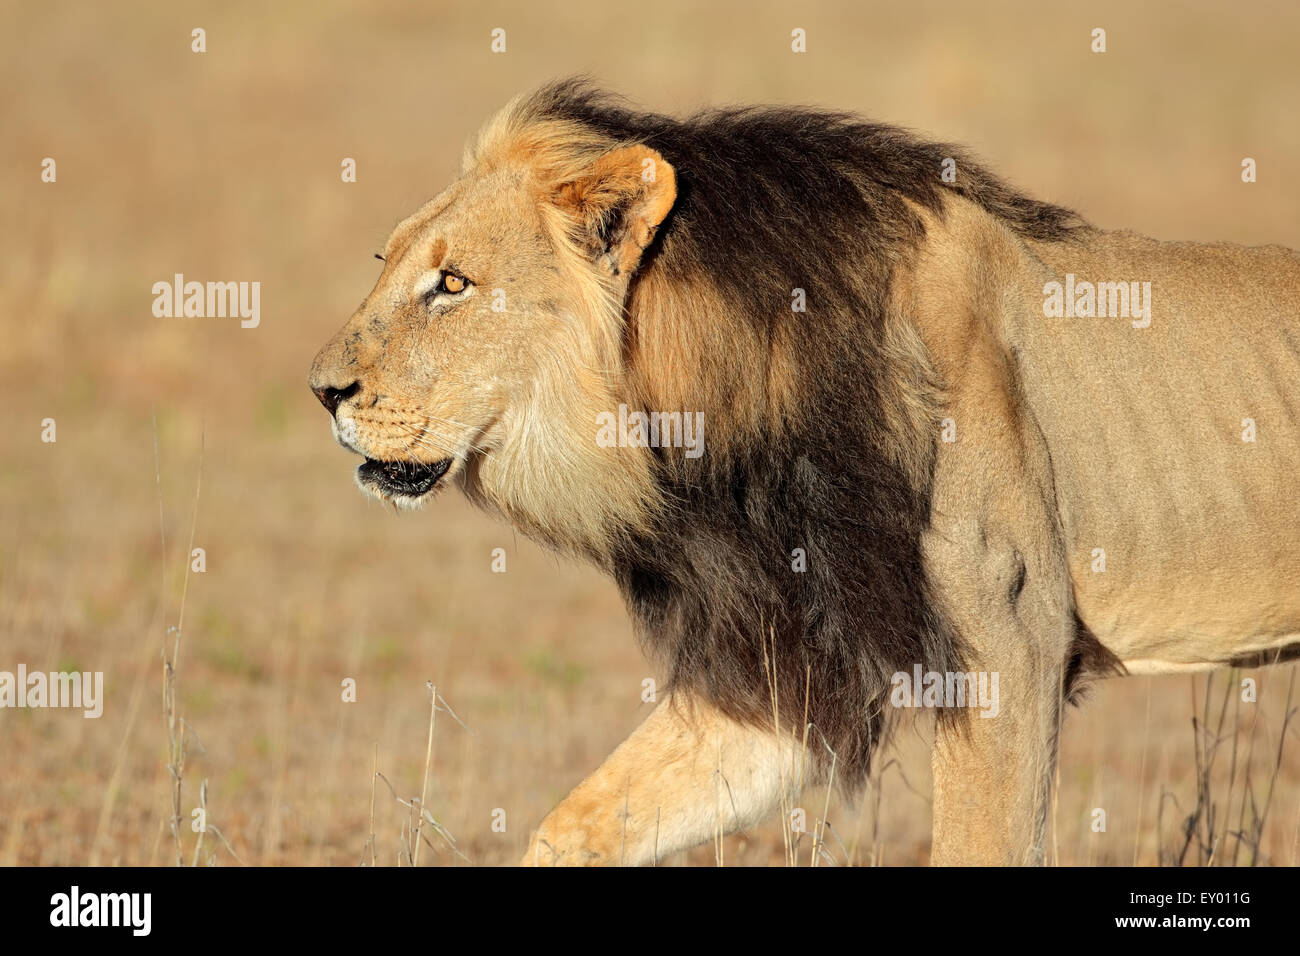 Big male African lion walking (Panthera leo), Kalahari desert, South Africa Stock Photo